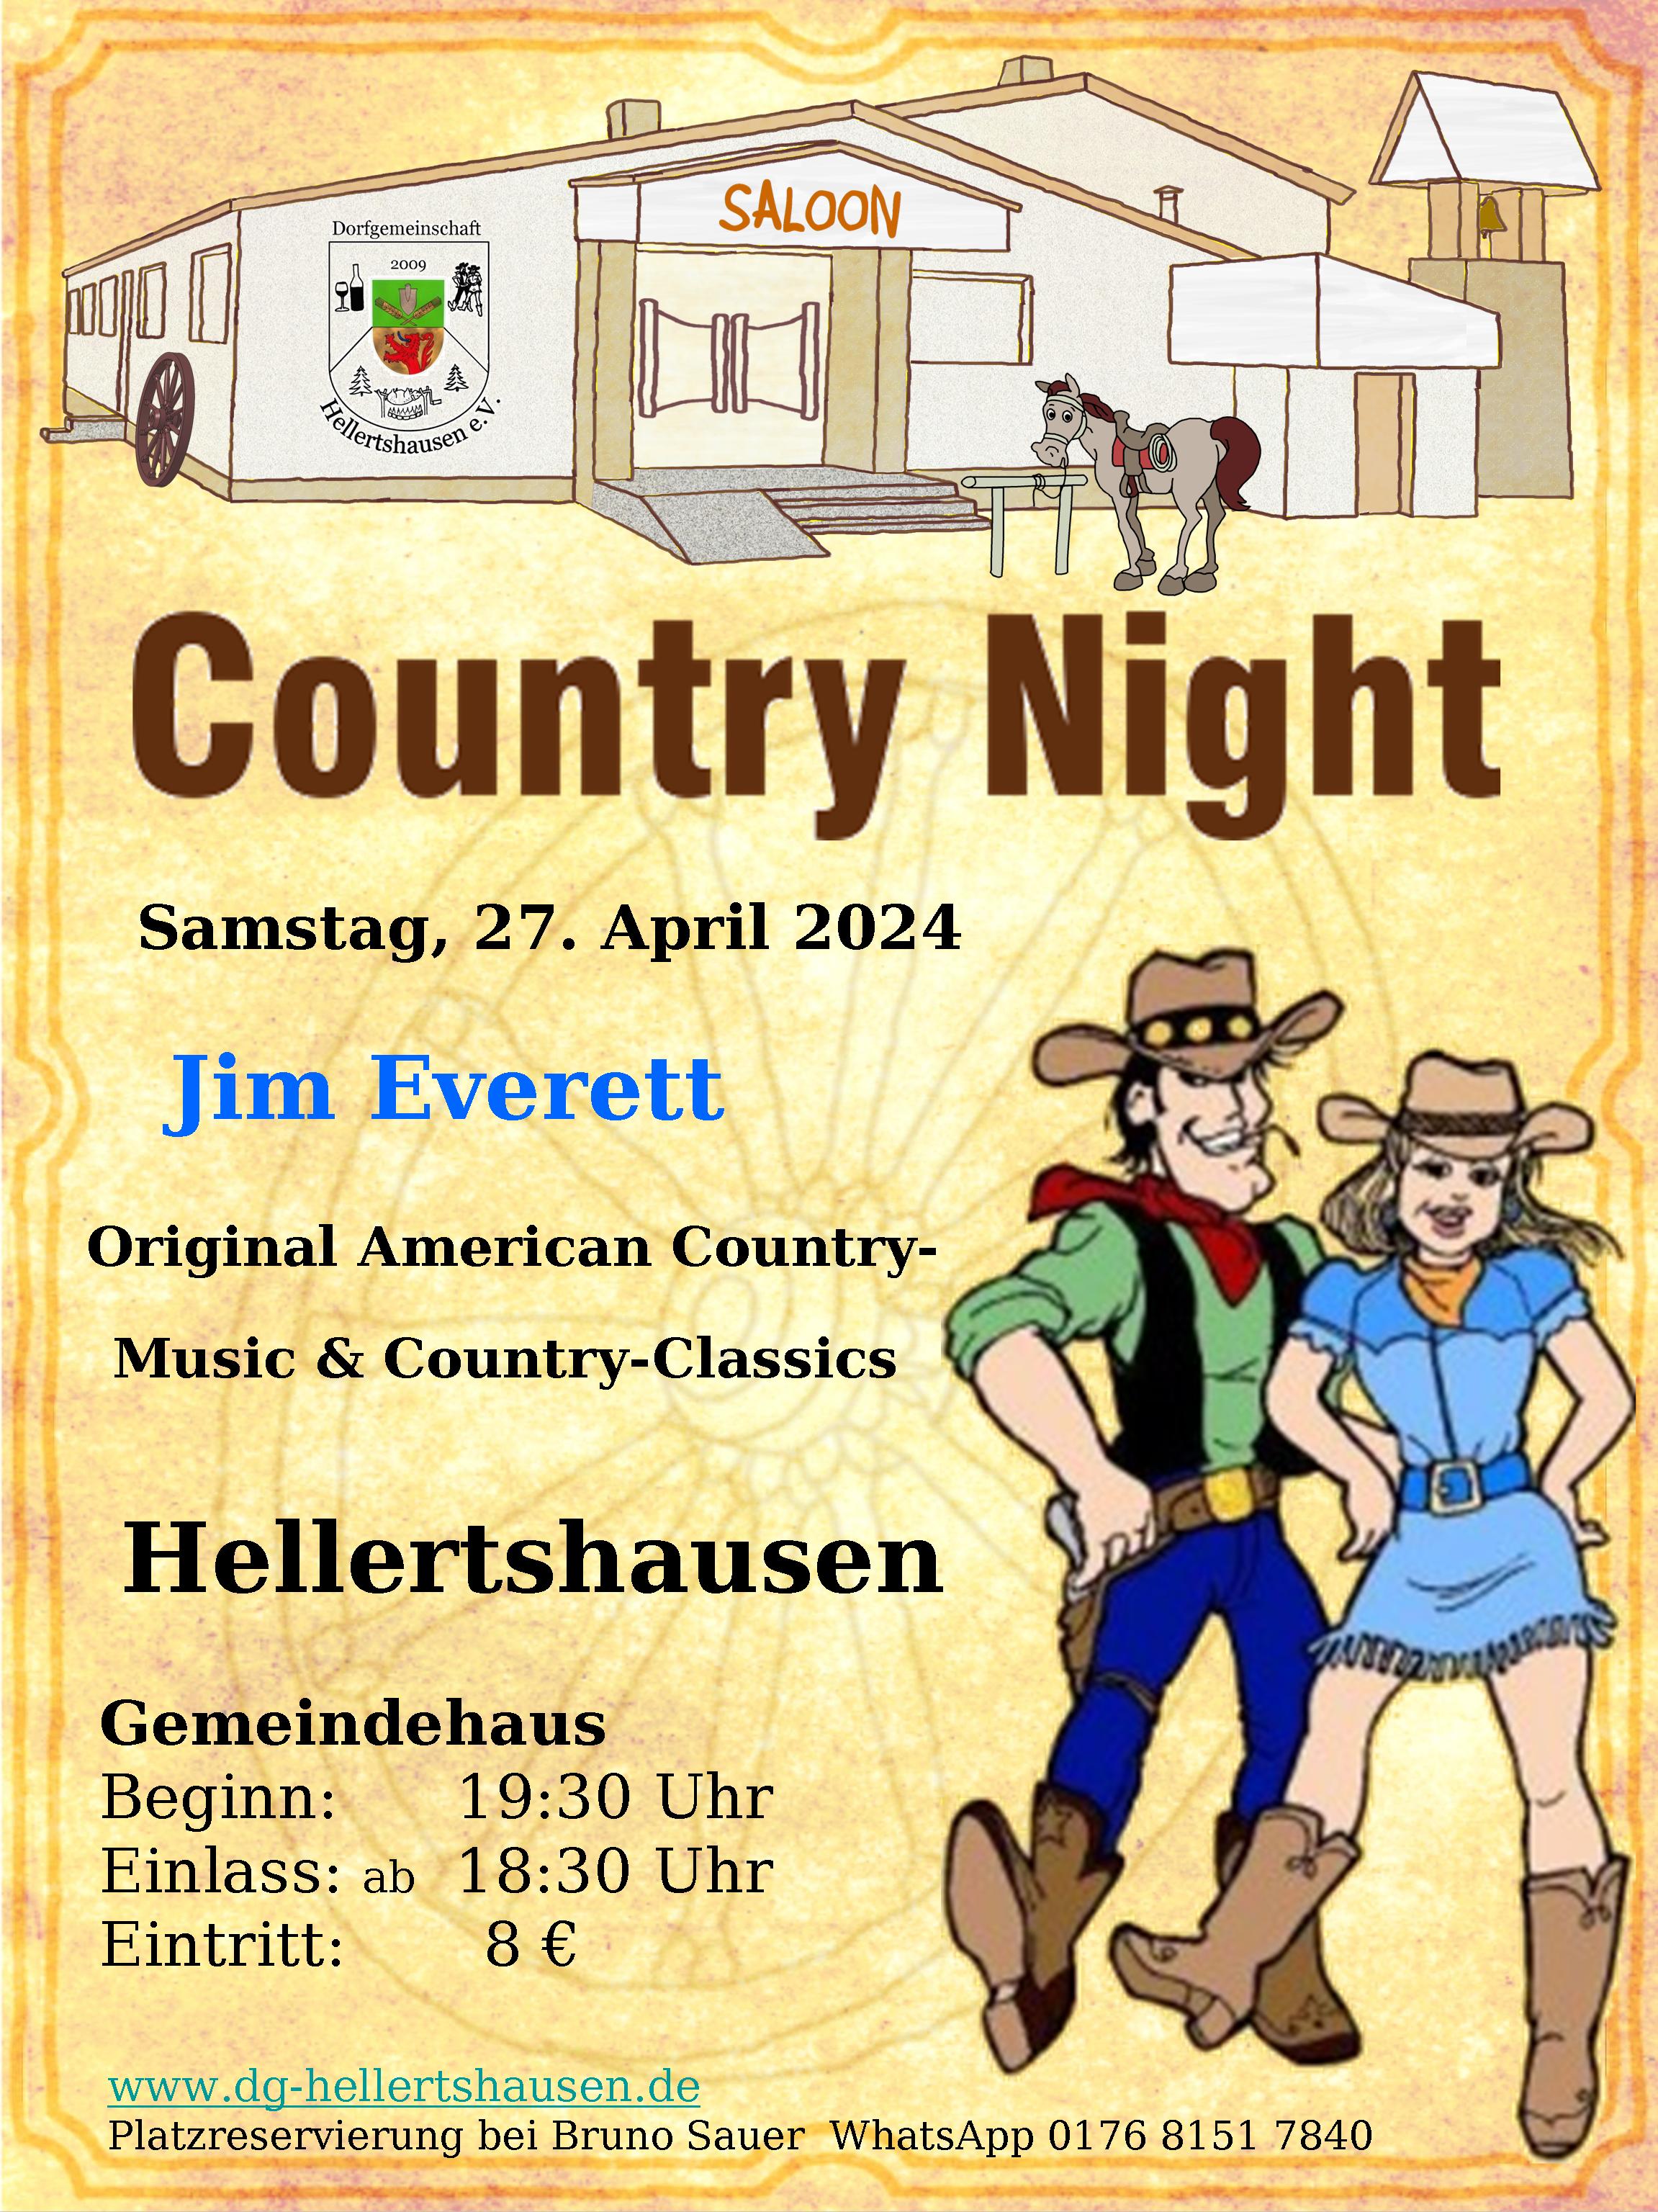 Plakat für Country Night in Hellertshausen Gemeindehaus am 27.04.2024